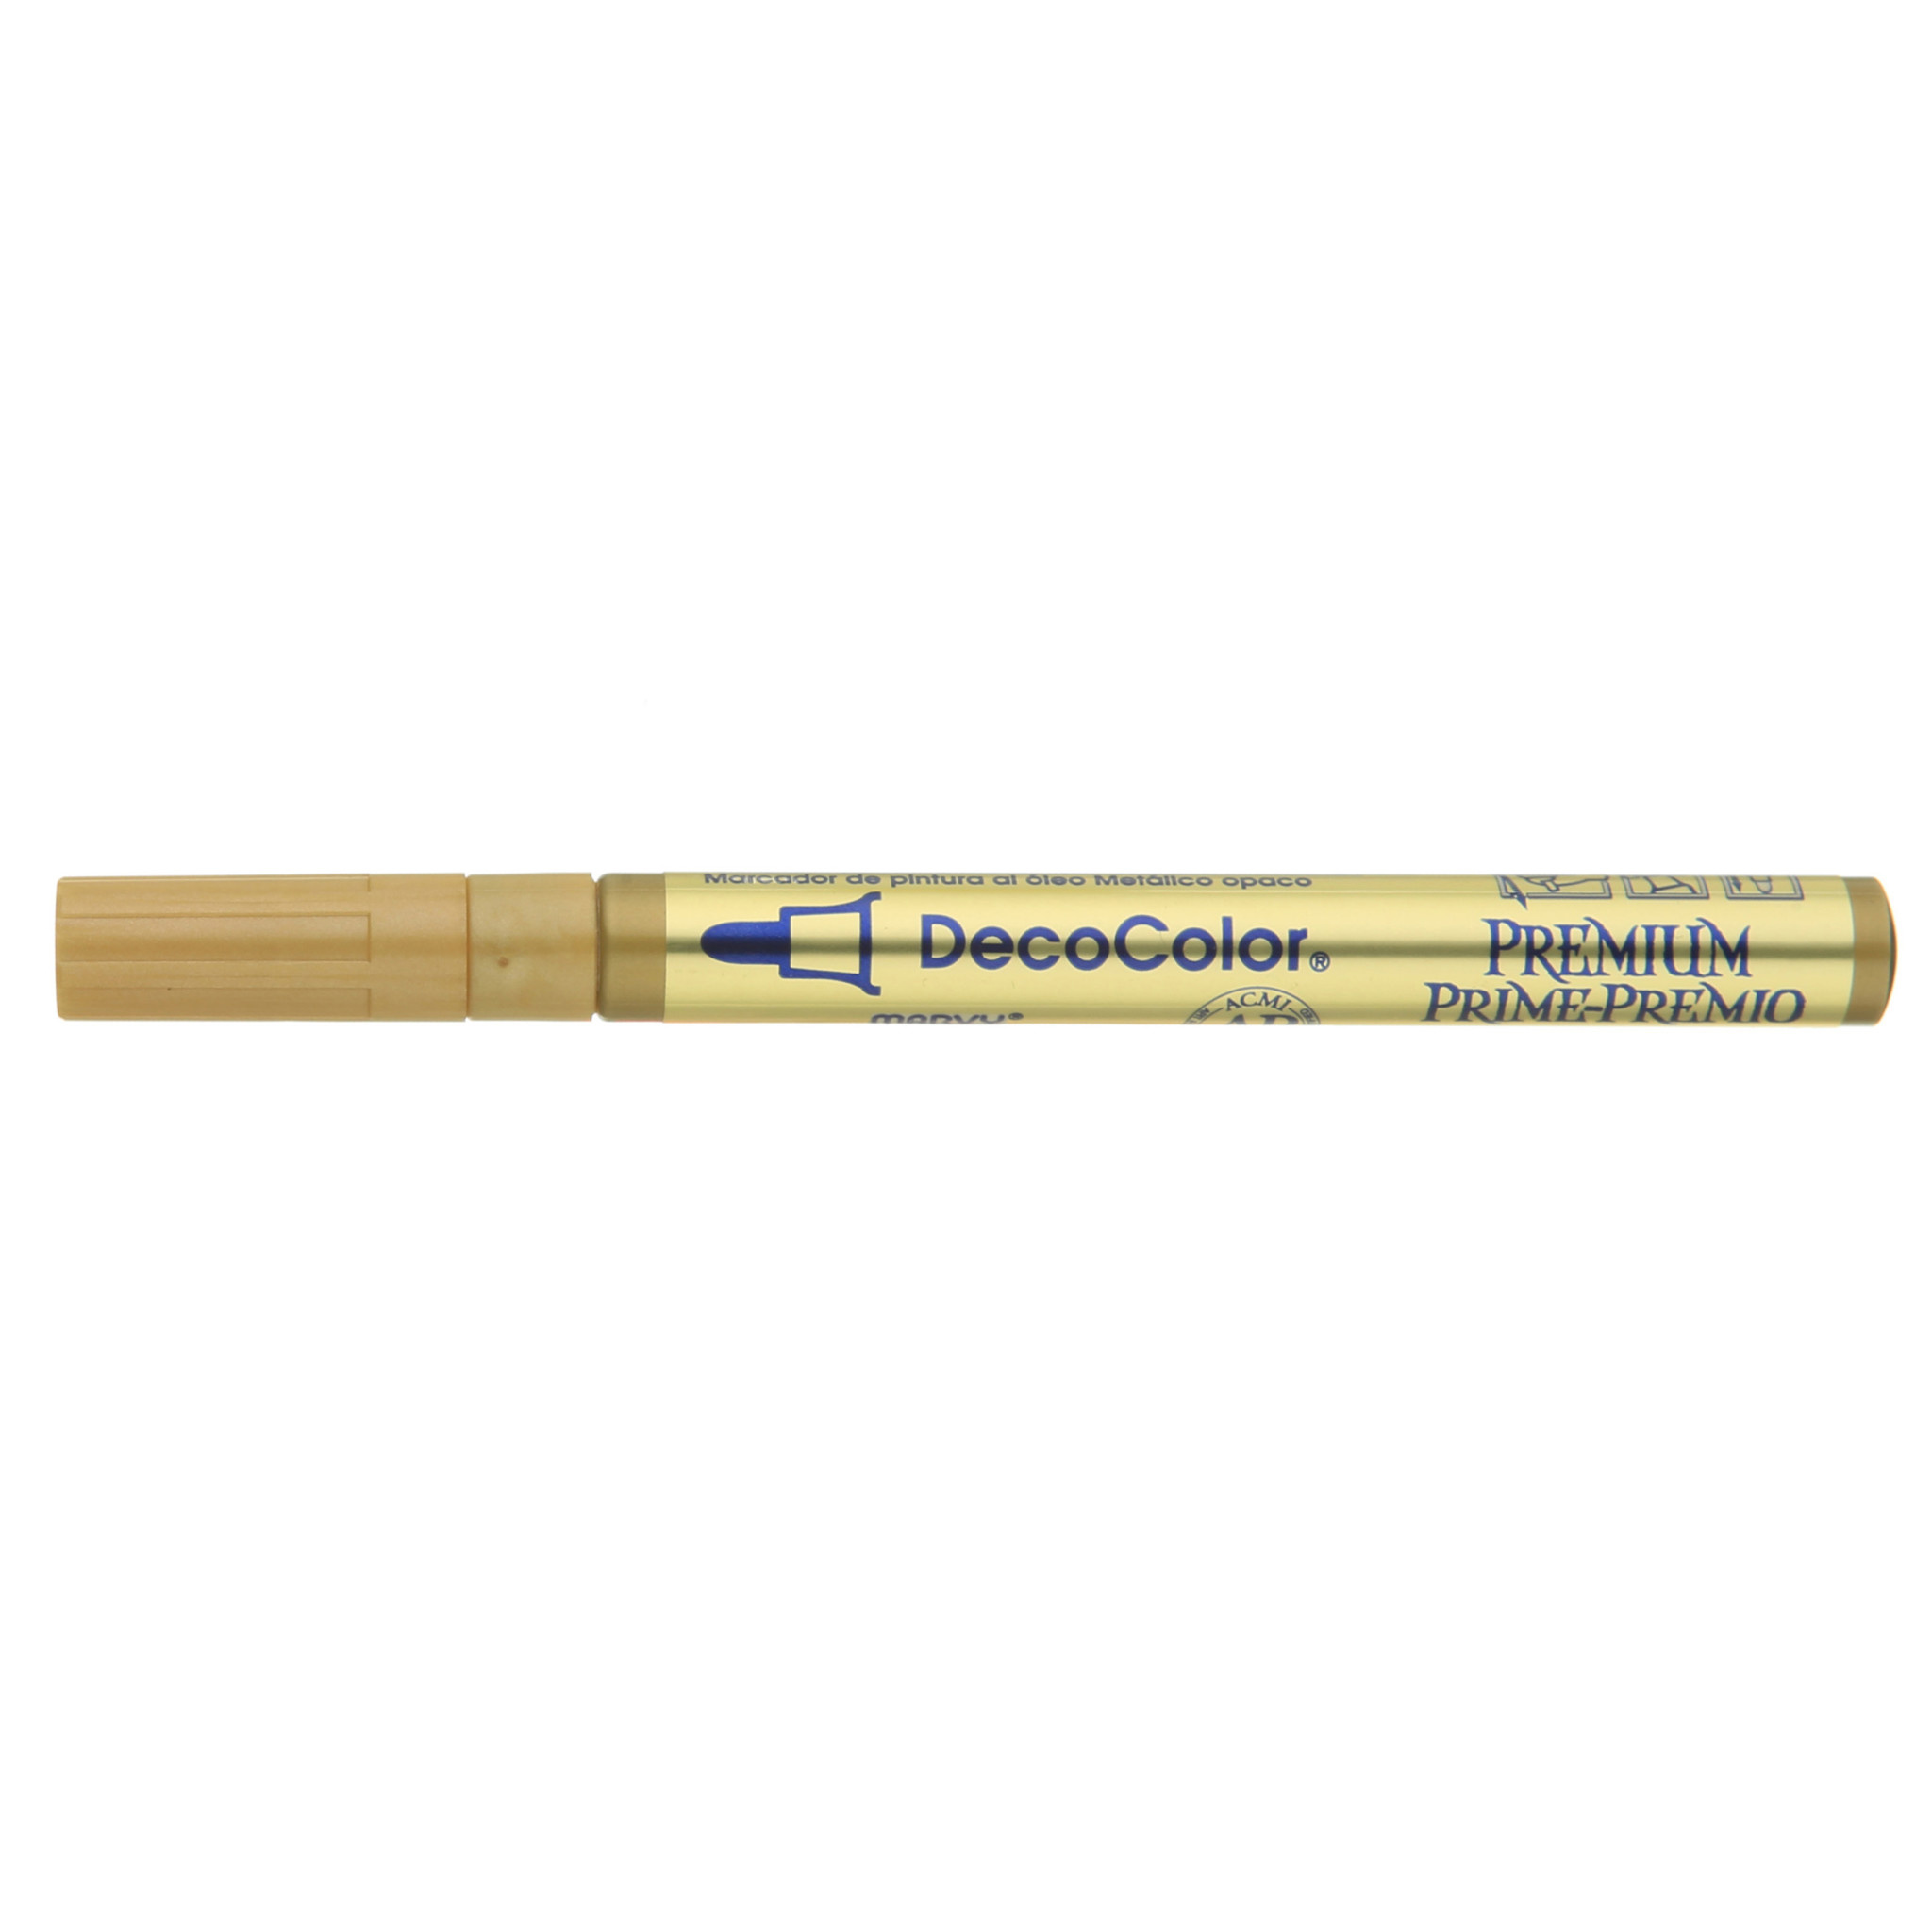 DecoColor Paint Marker Broad Line - RISD Store